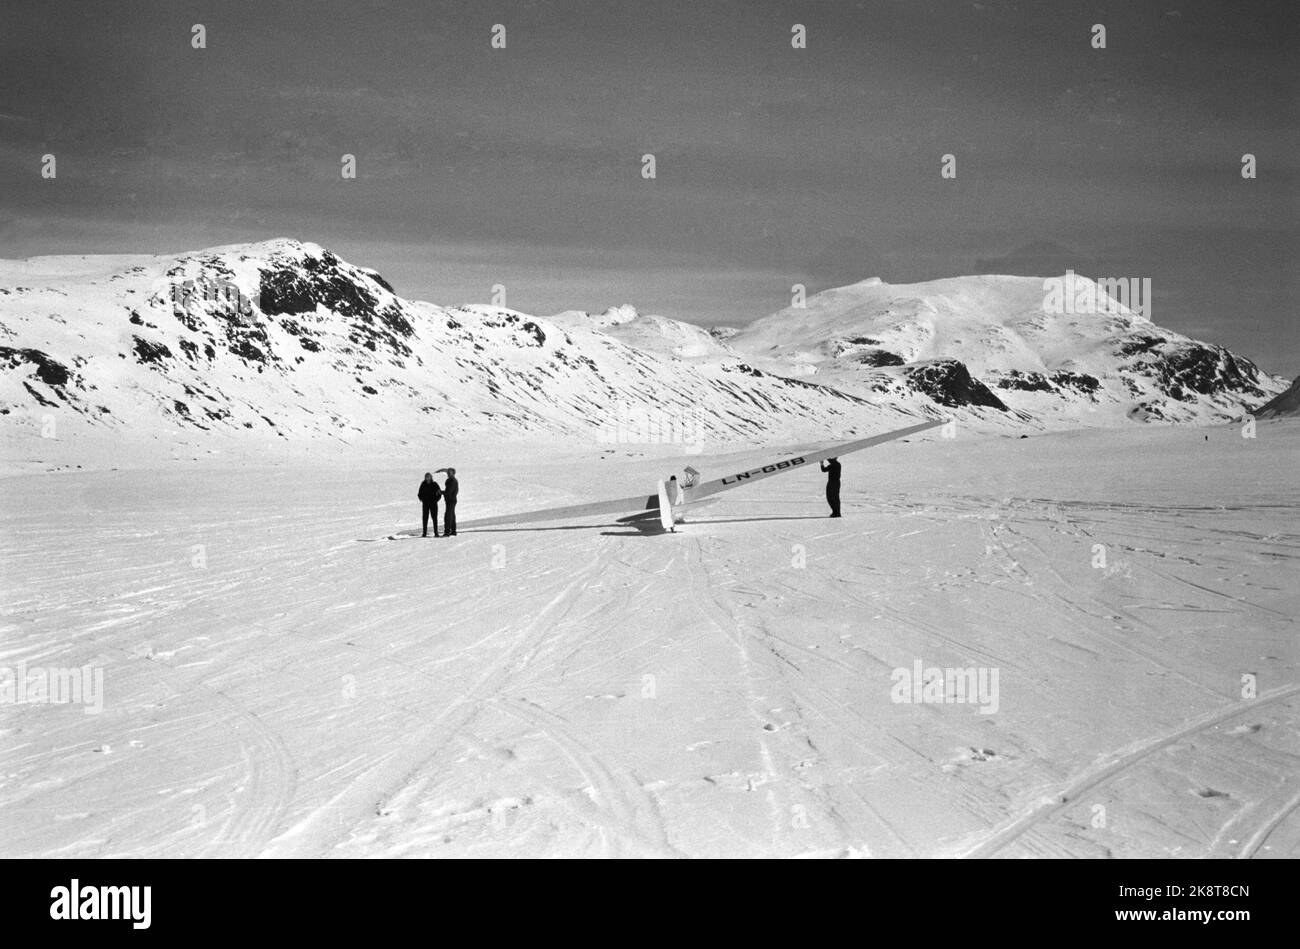 Eidsbugarden, Jotunheimen, 6. Mai 1961. Fünf Segelflugzeuge genießen sich in der Bergwelt. Zwei von ihnen landen auf dem Uranos-Gletscher, als die ersten Segelflugzeuge jemals auf einem Gletscher landeten. Als erster landet der dänische Möbelpolsterer Robert Nielsen aus Silkeborg. Der Norweger Bakkasserer, Bjarne Bergsund landet auf Platz 2. Ein Segelflugzeug wartet darauf, hochgezogen zu werden. Foto; Ivar Aaserud / NTB Stockfoto